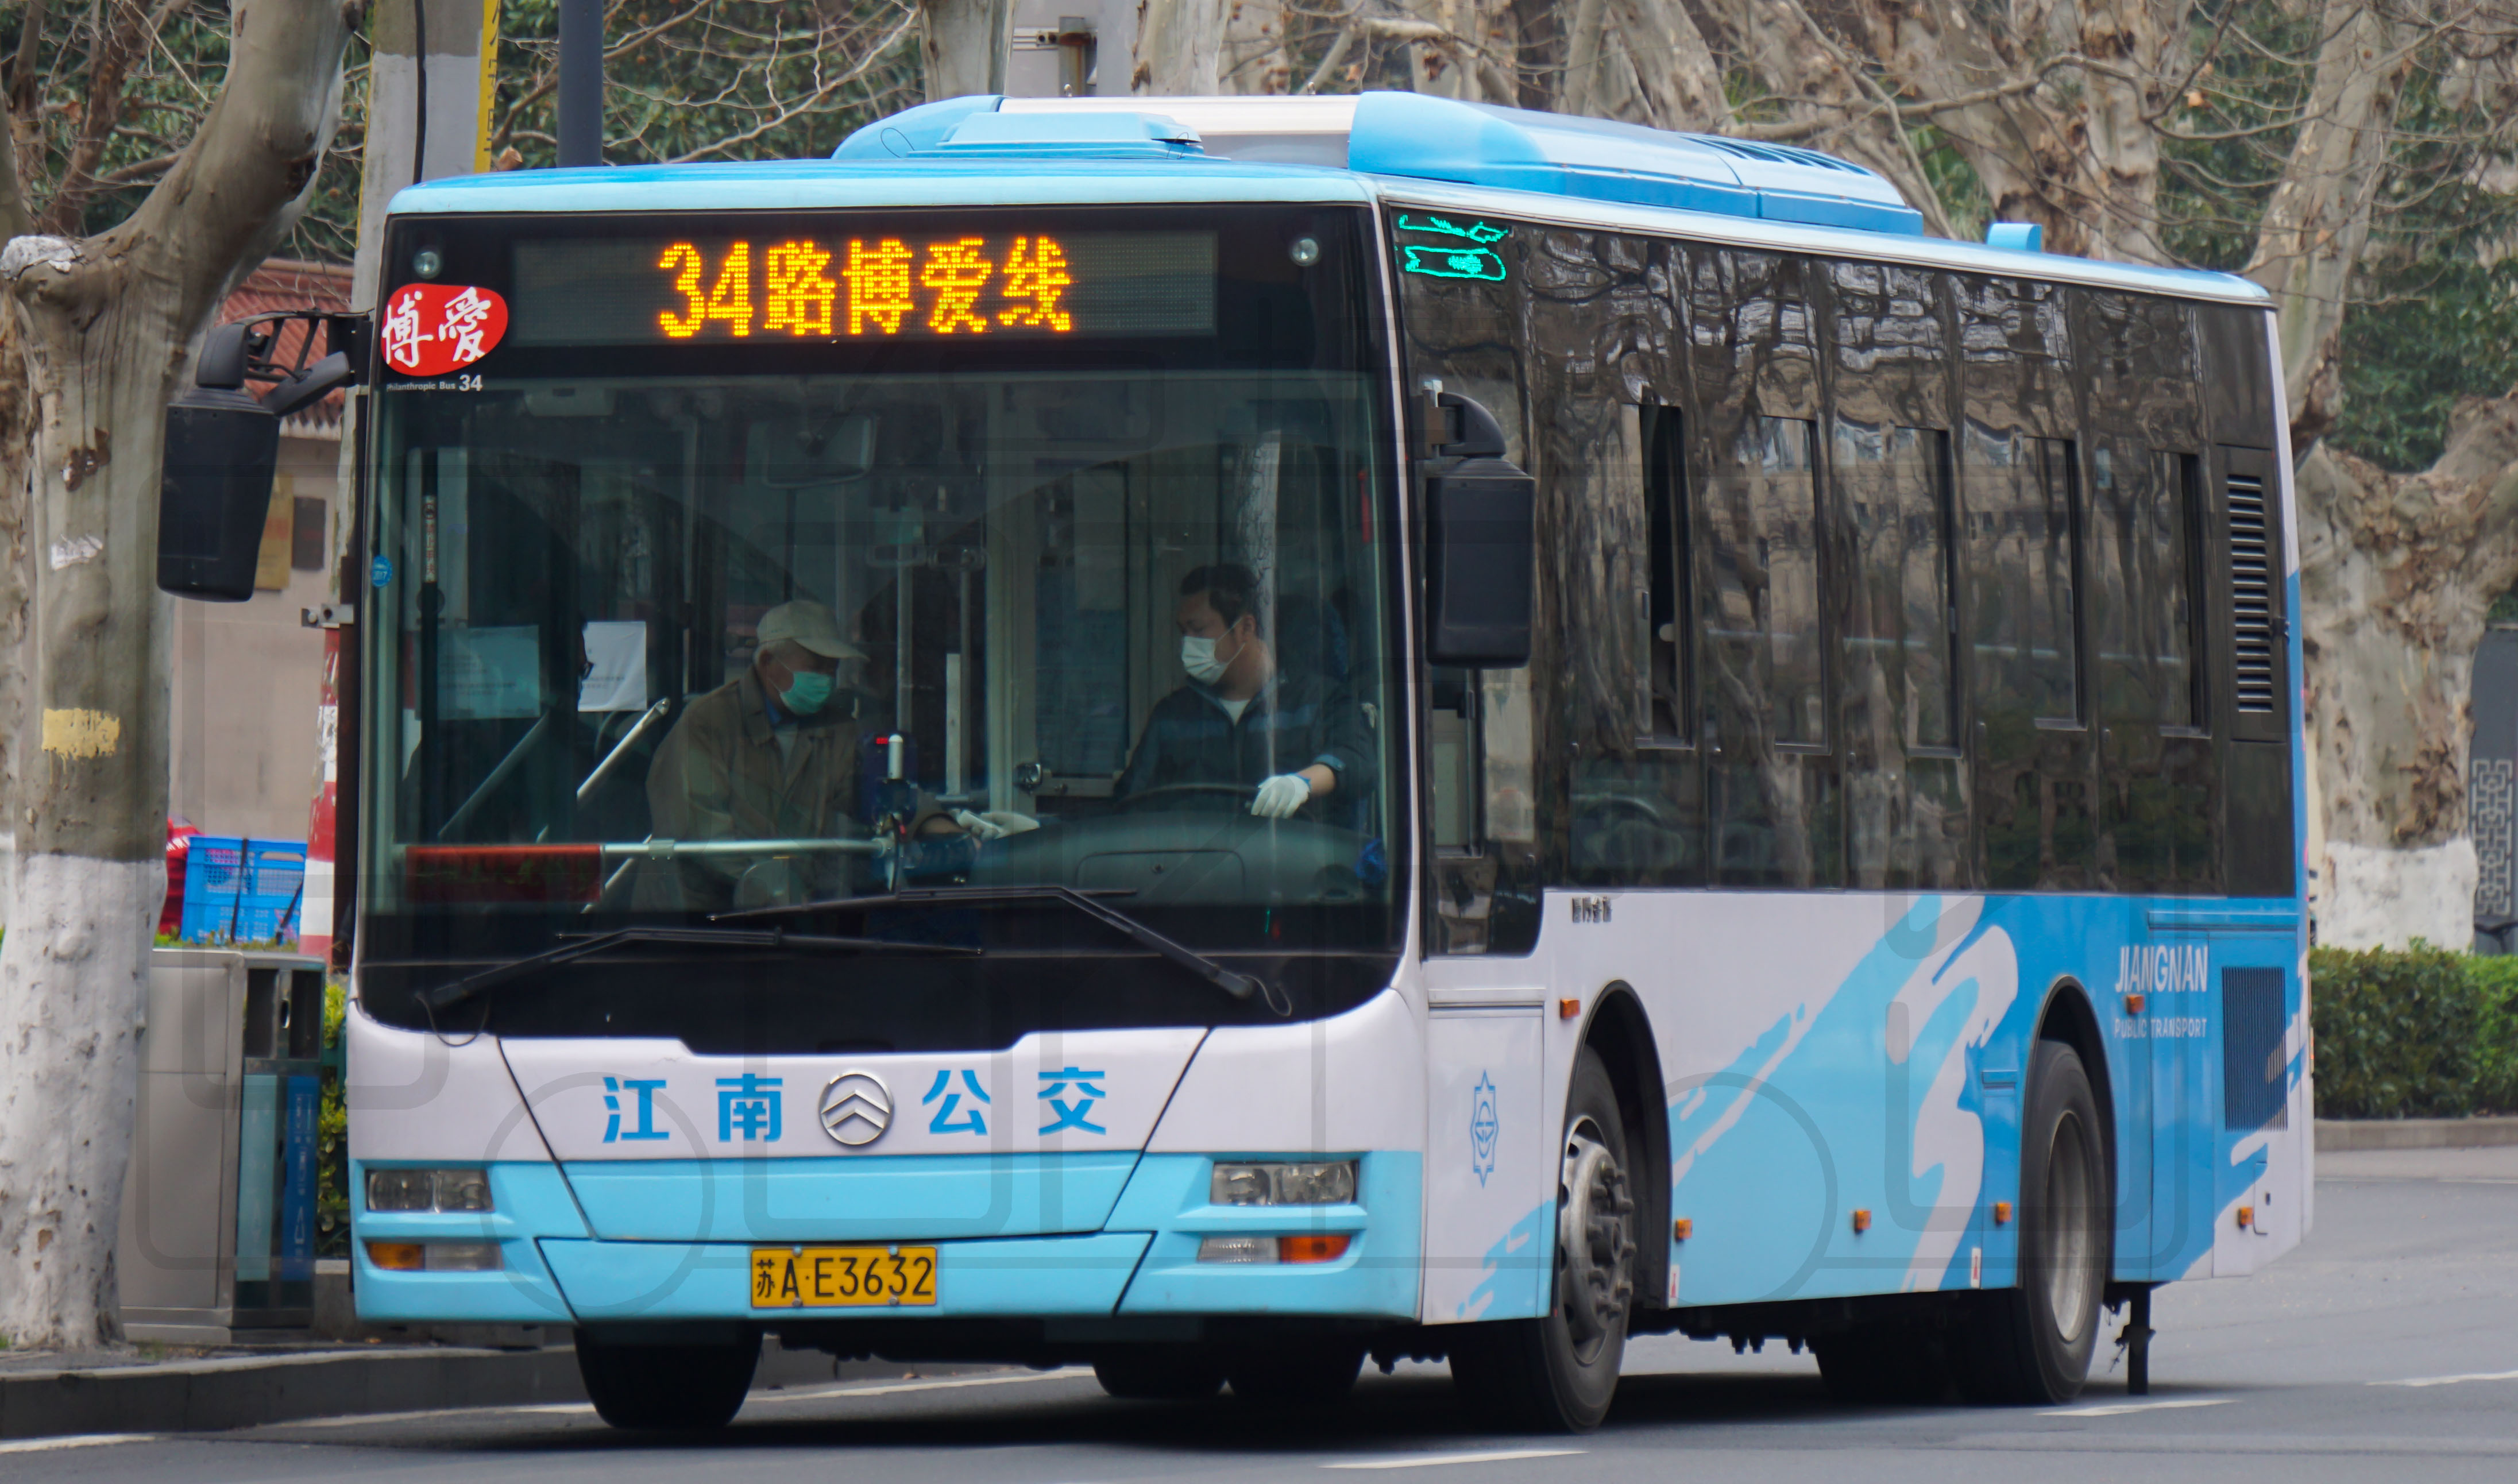 34路(xml6105j15cn)(南京交通wiki)jpg